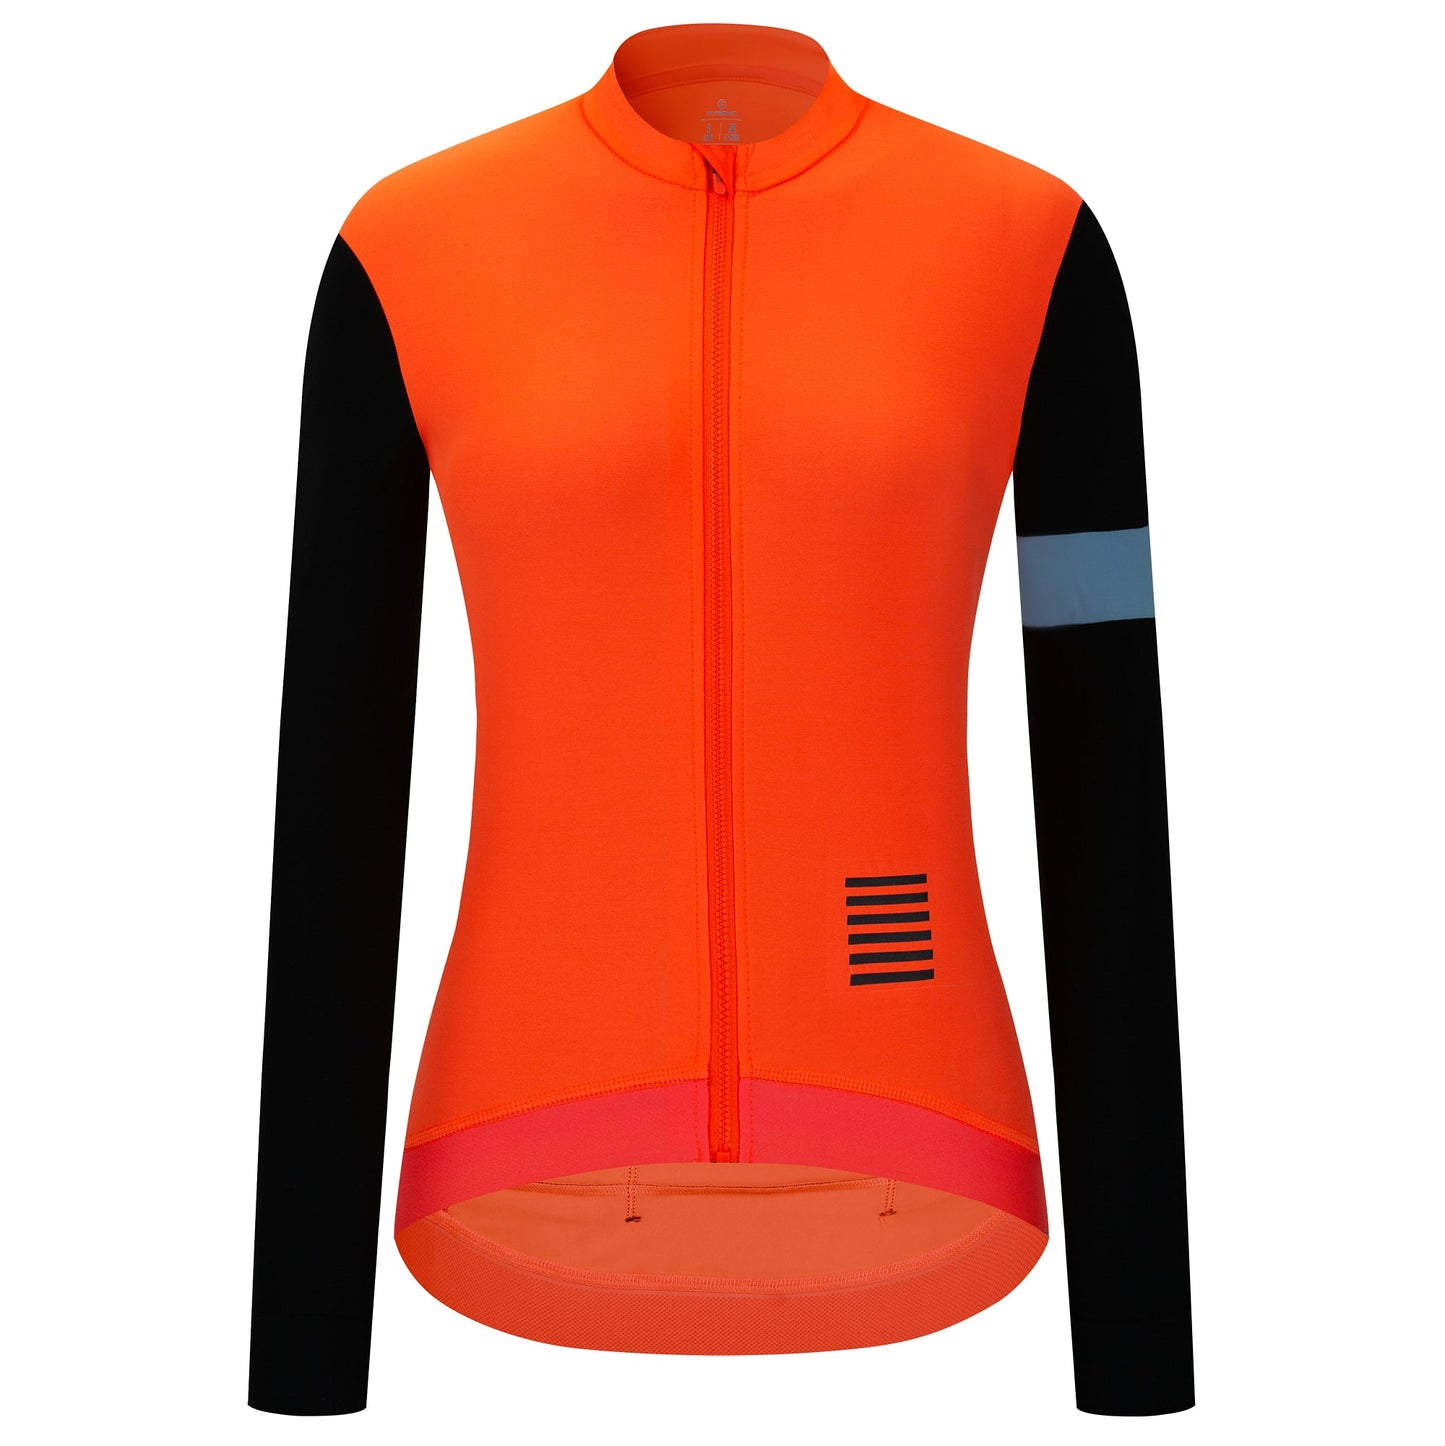 YKYW Women's Cycling Jersey Jacket Winter 5-15℃ Fleece Warm Long Sleeve Blue